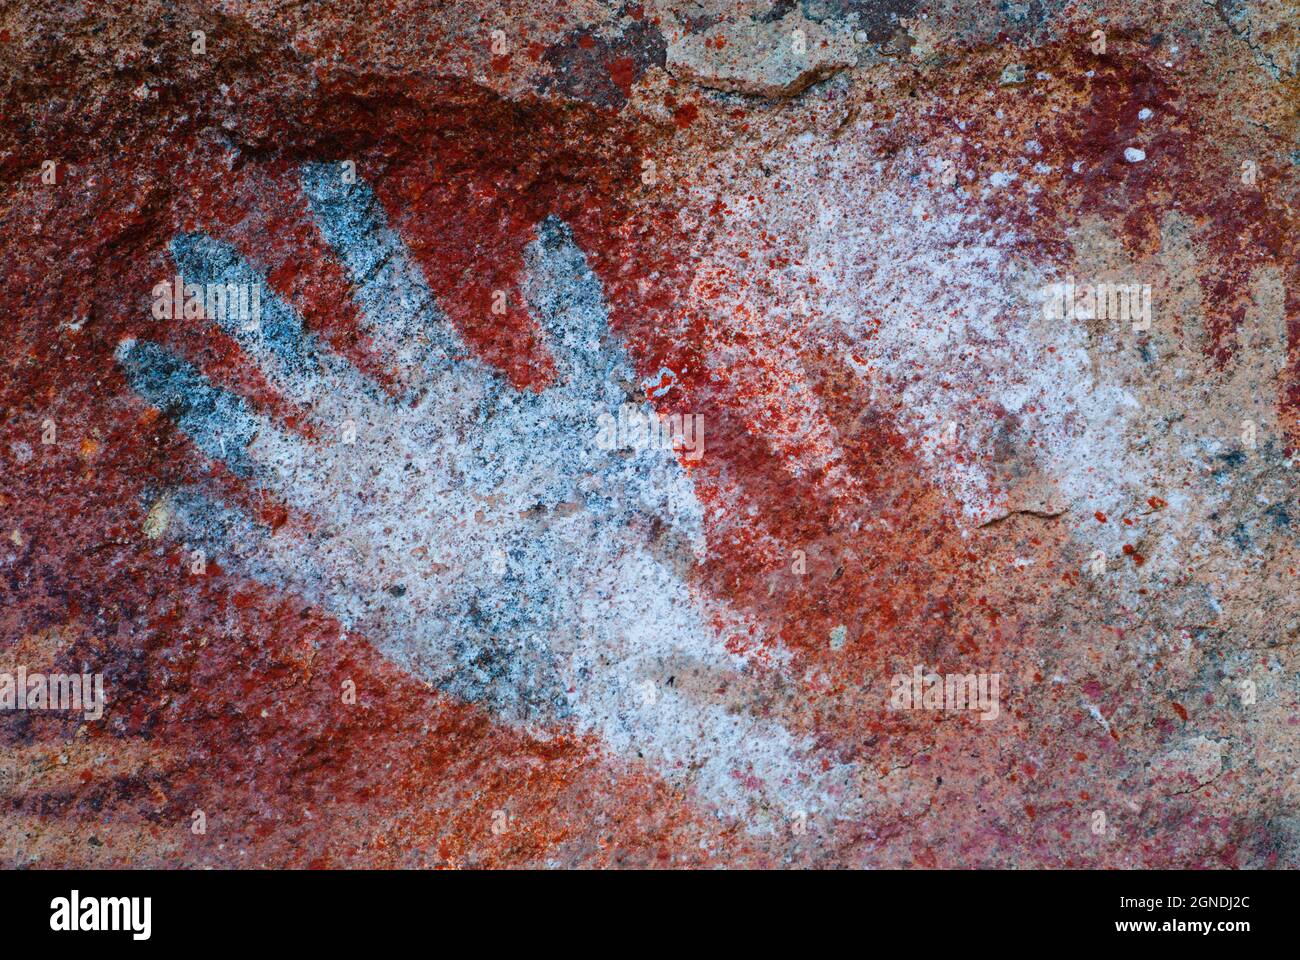 Grotta delle mani situata nella provincia meridionale di Santa Cruz nella Patagonia Argentina. Foto Stock